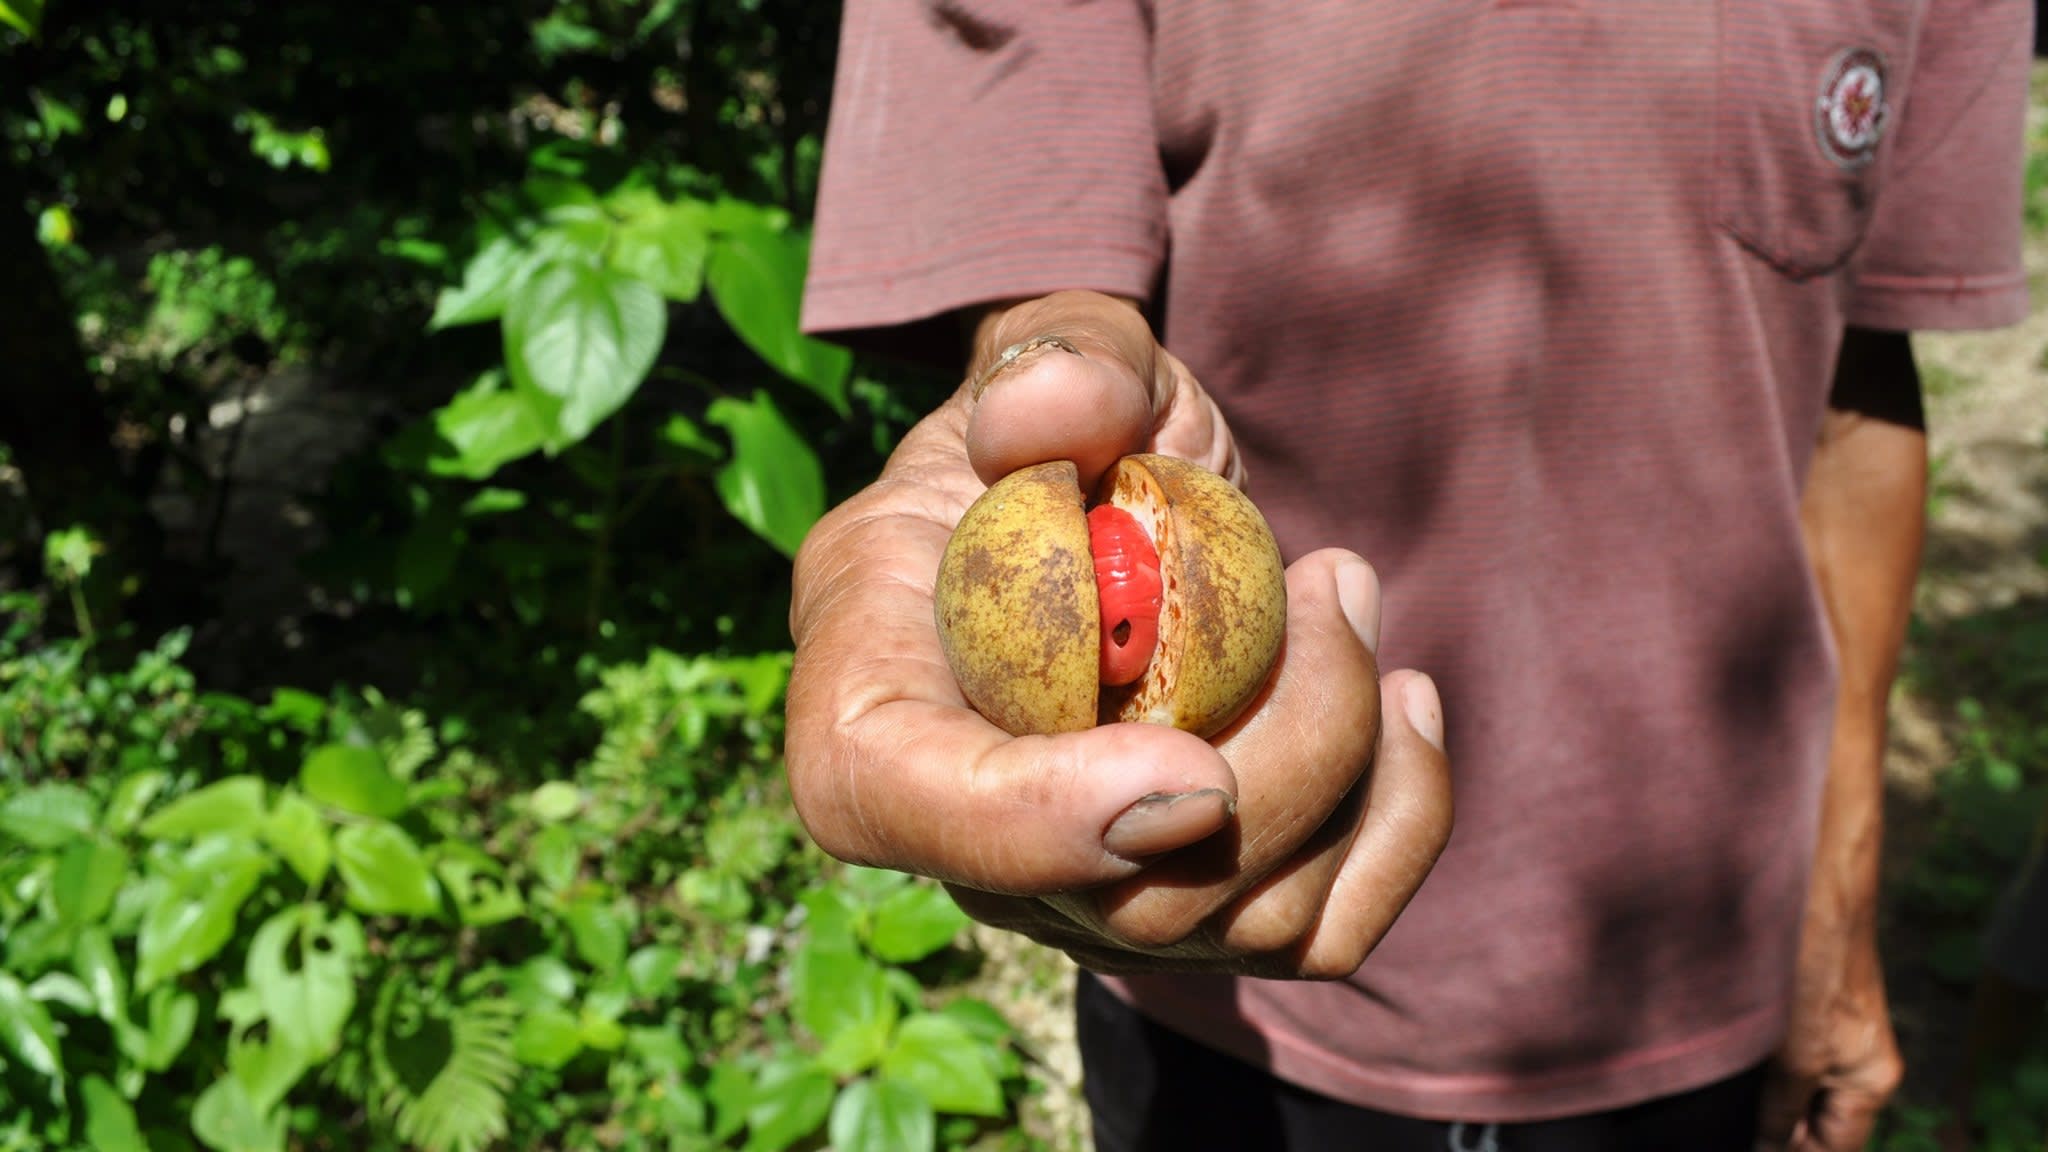 Mężczyzna trzymający dojrzały owoc gałki muszkatołowej z jasnoczerwonym osnową, który będzie suszony i sprzedawany jako maczuga 